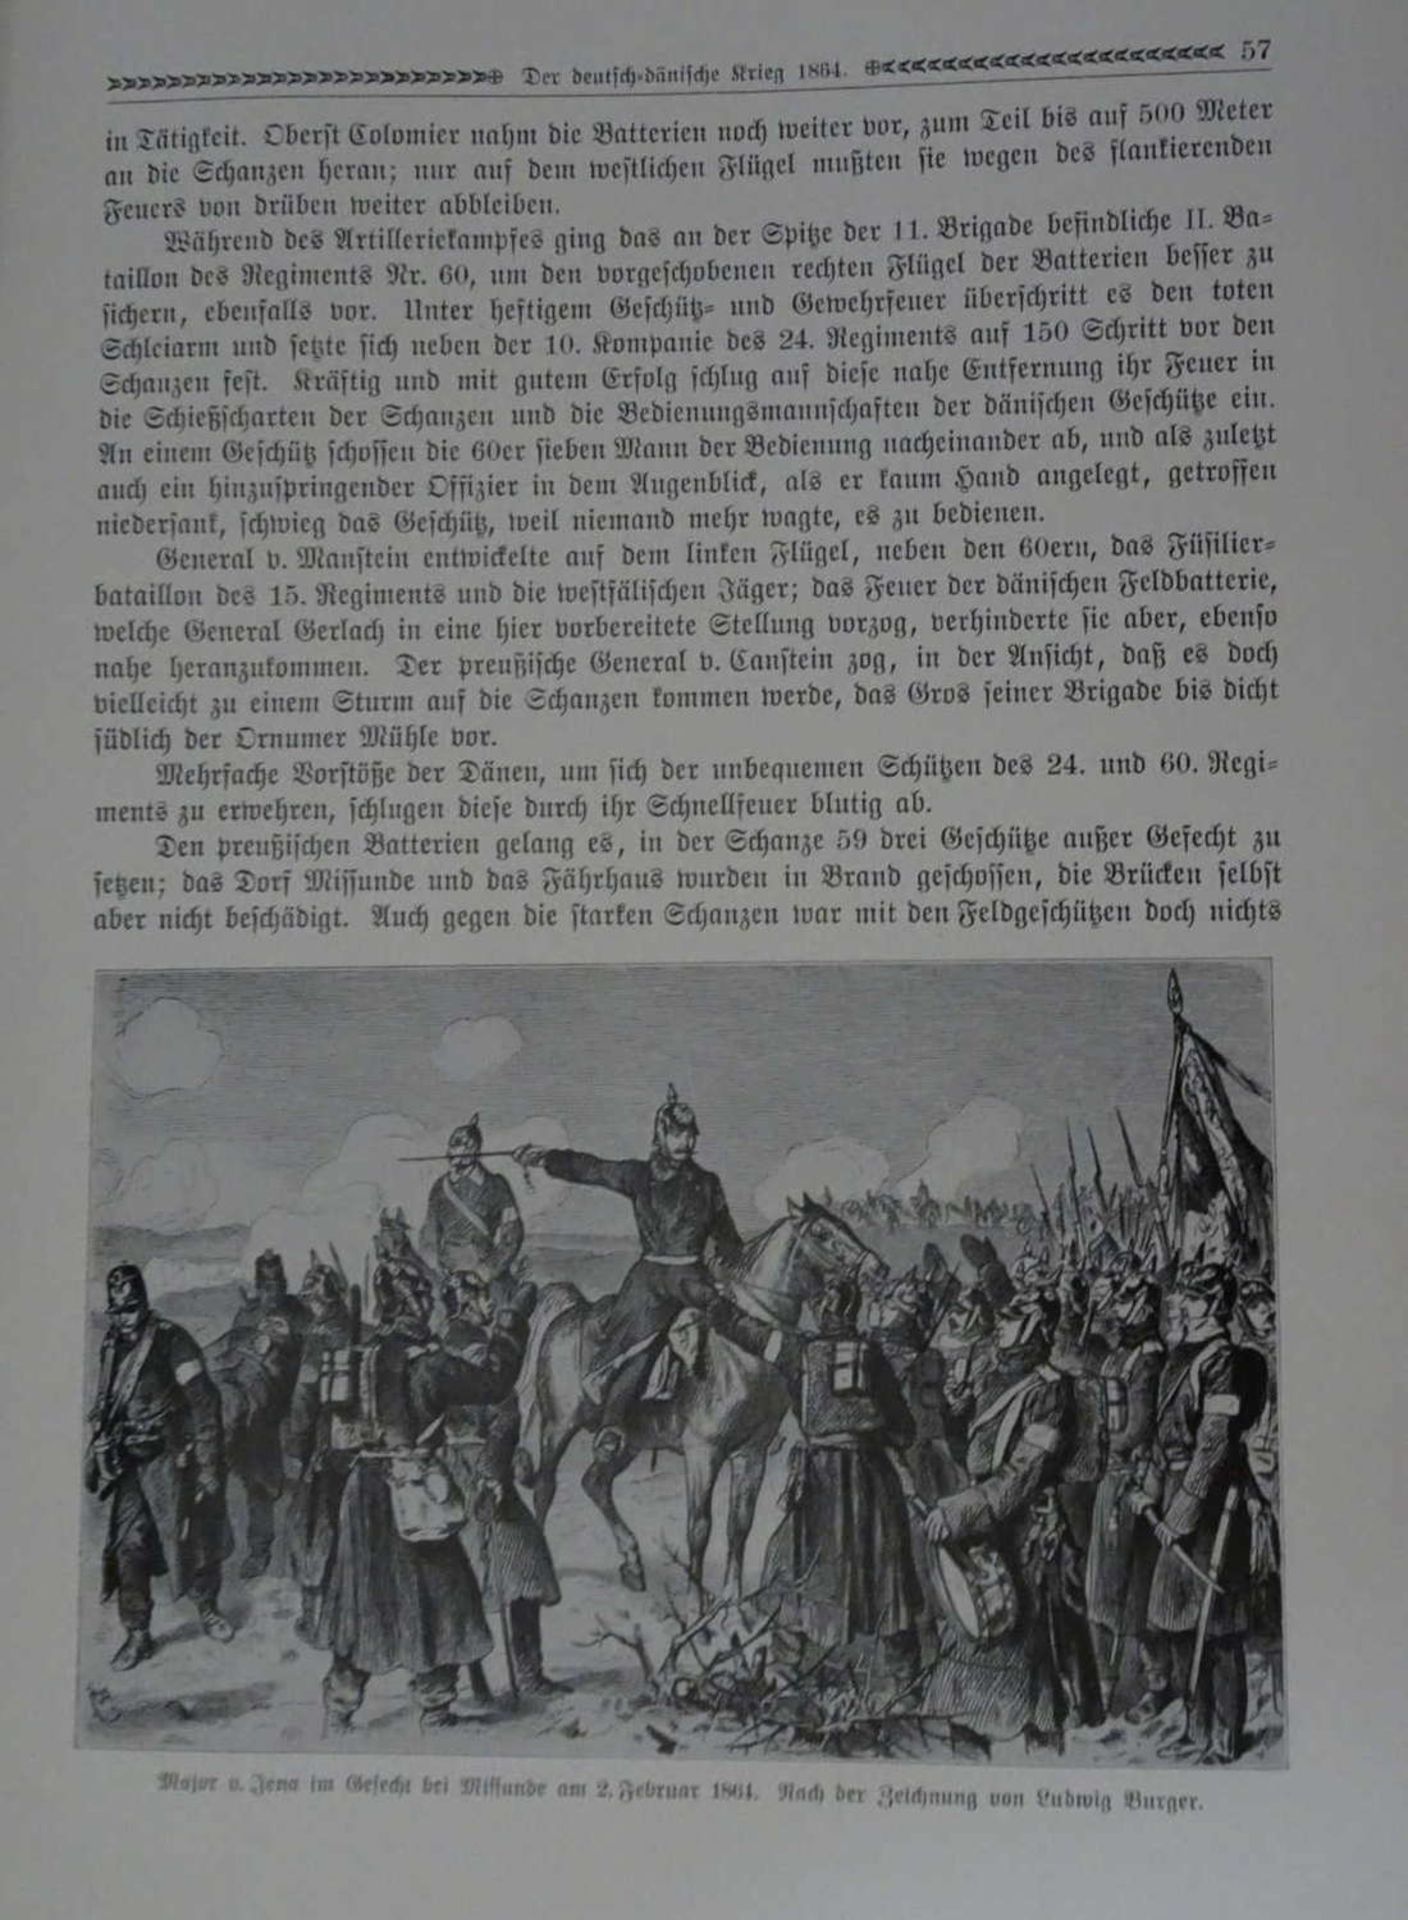 von Voss, Wilhelm, Illustrierte Geschichte der deutschen Einigungskriege 1864 - 1866.Union - Image 3 of 3